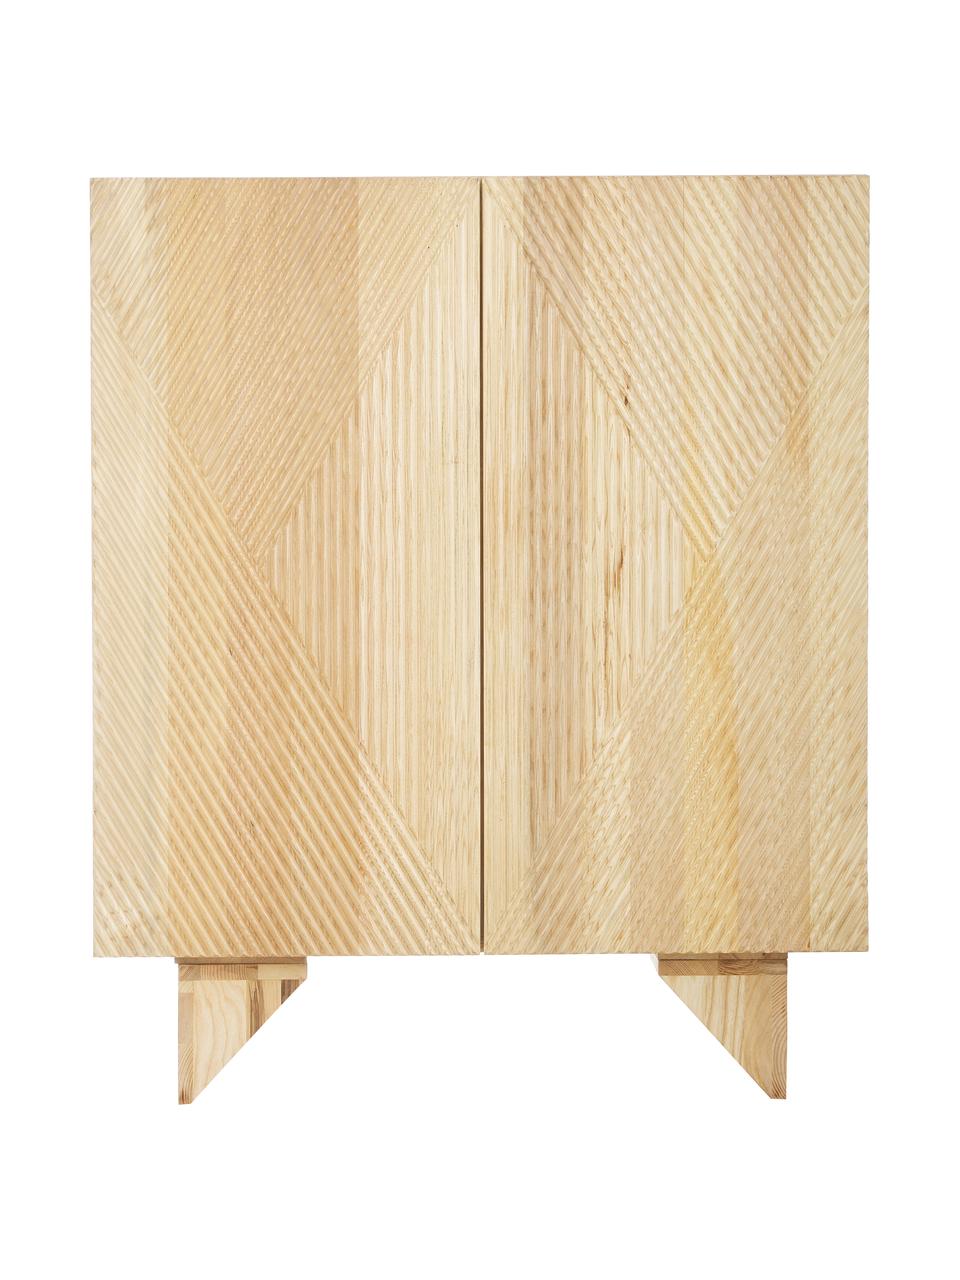 Komoda z litego drewna jesionowego Louis, Korpus: ite drewno jesionowe laki, Drewno jesionowe, S 100 x W 120 cm